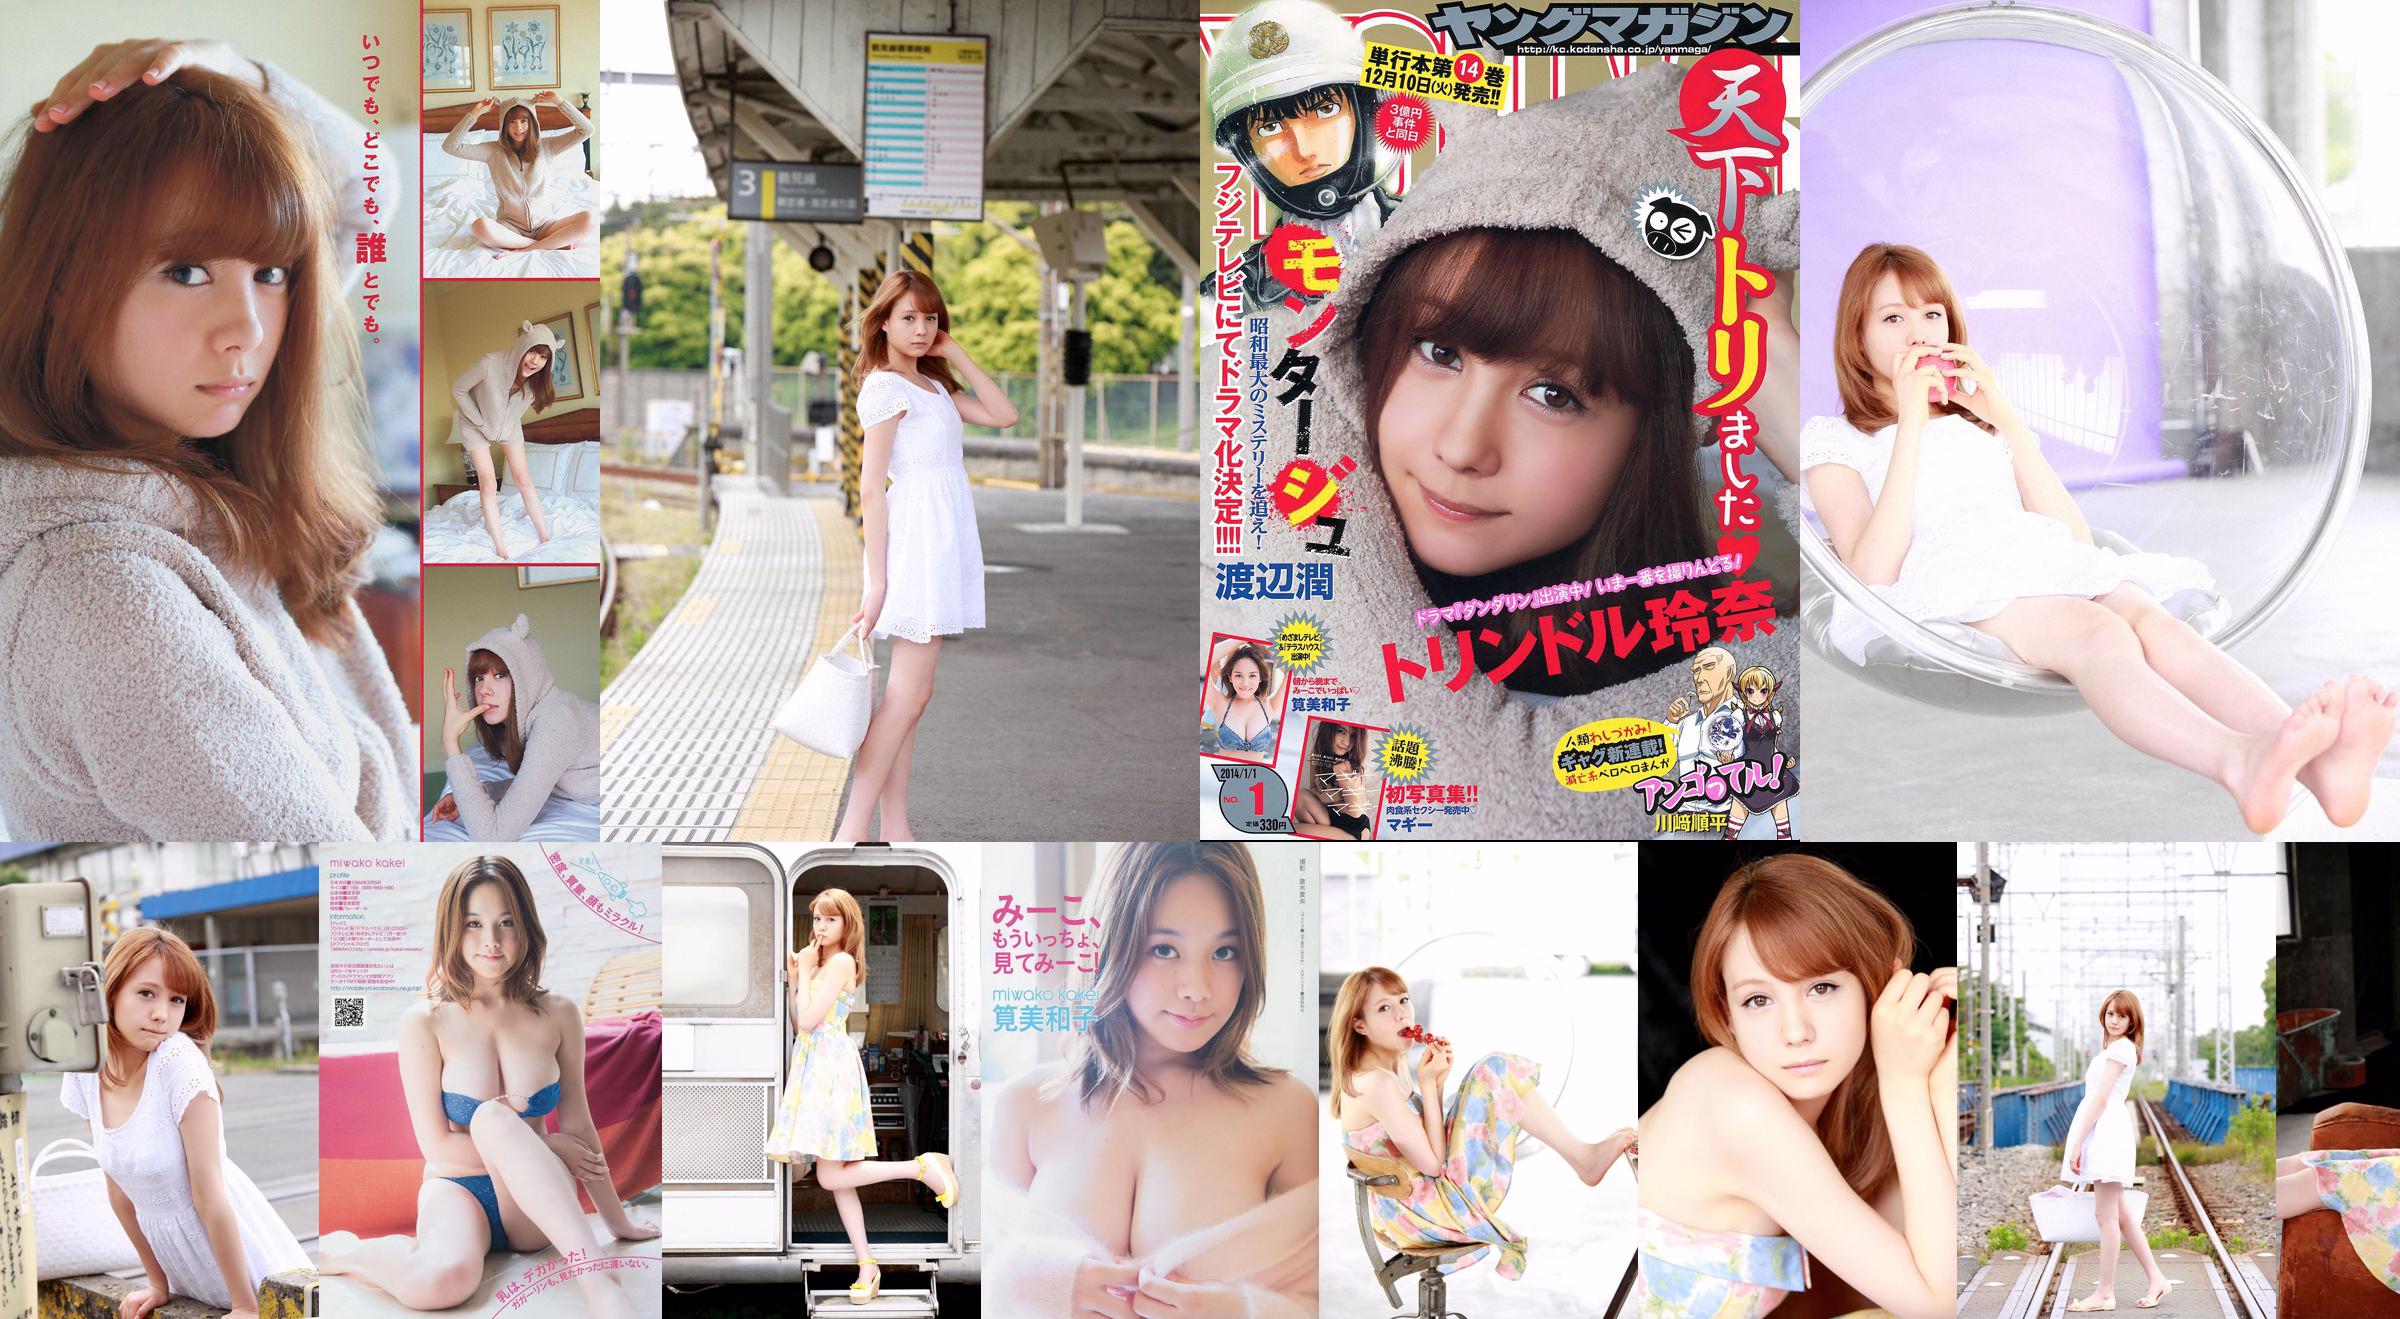 [Young Magazine] Reina Triendl Maggie Miwako Kakei 2014 No.01 Photograph No.852e58 หน้า 1